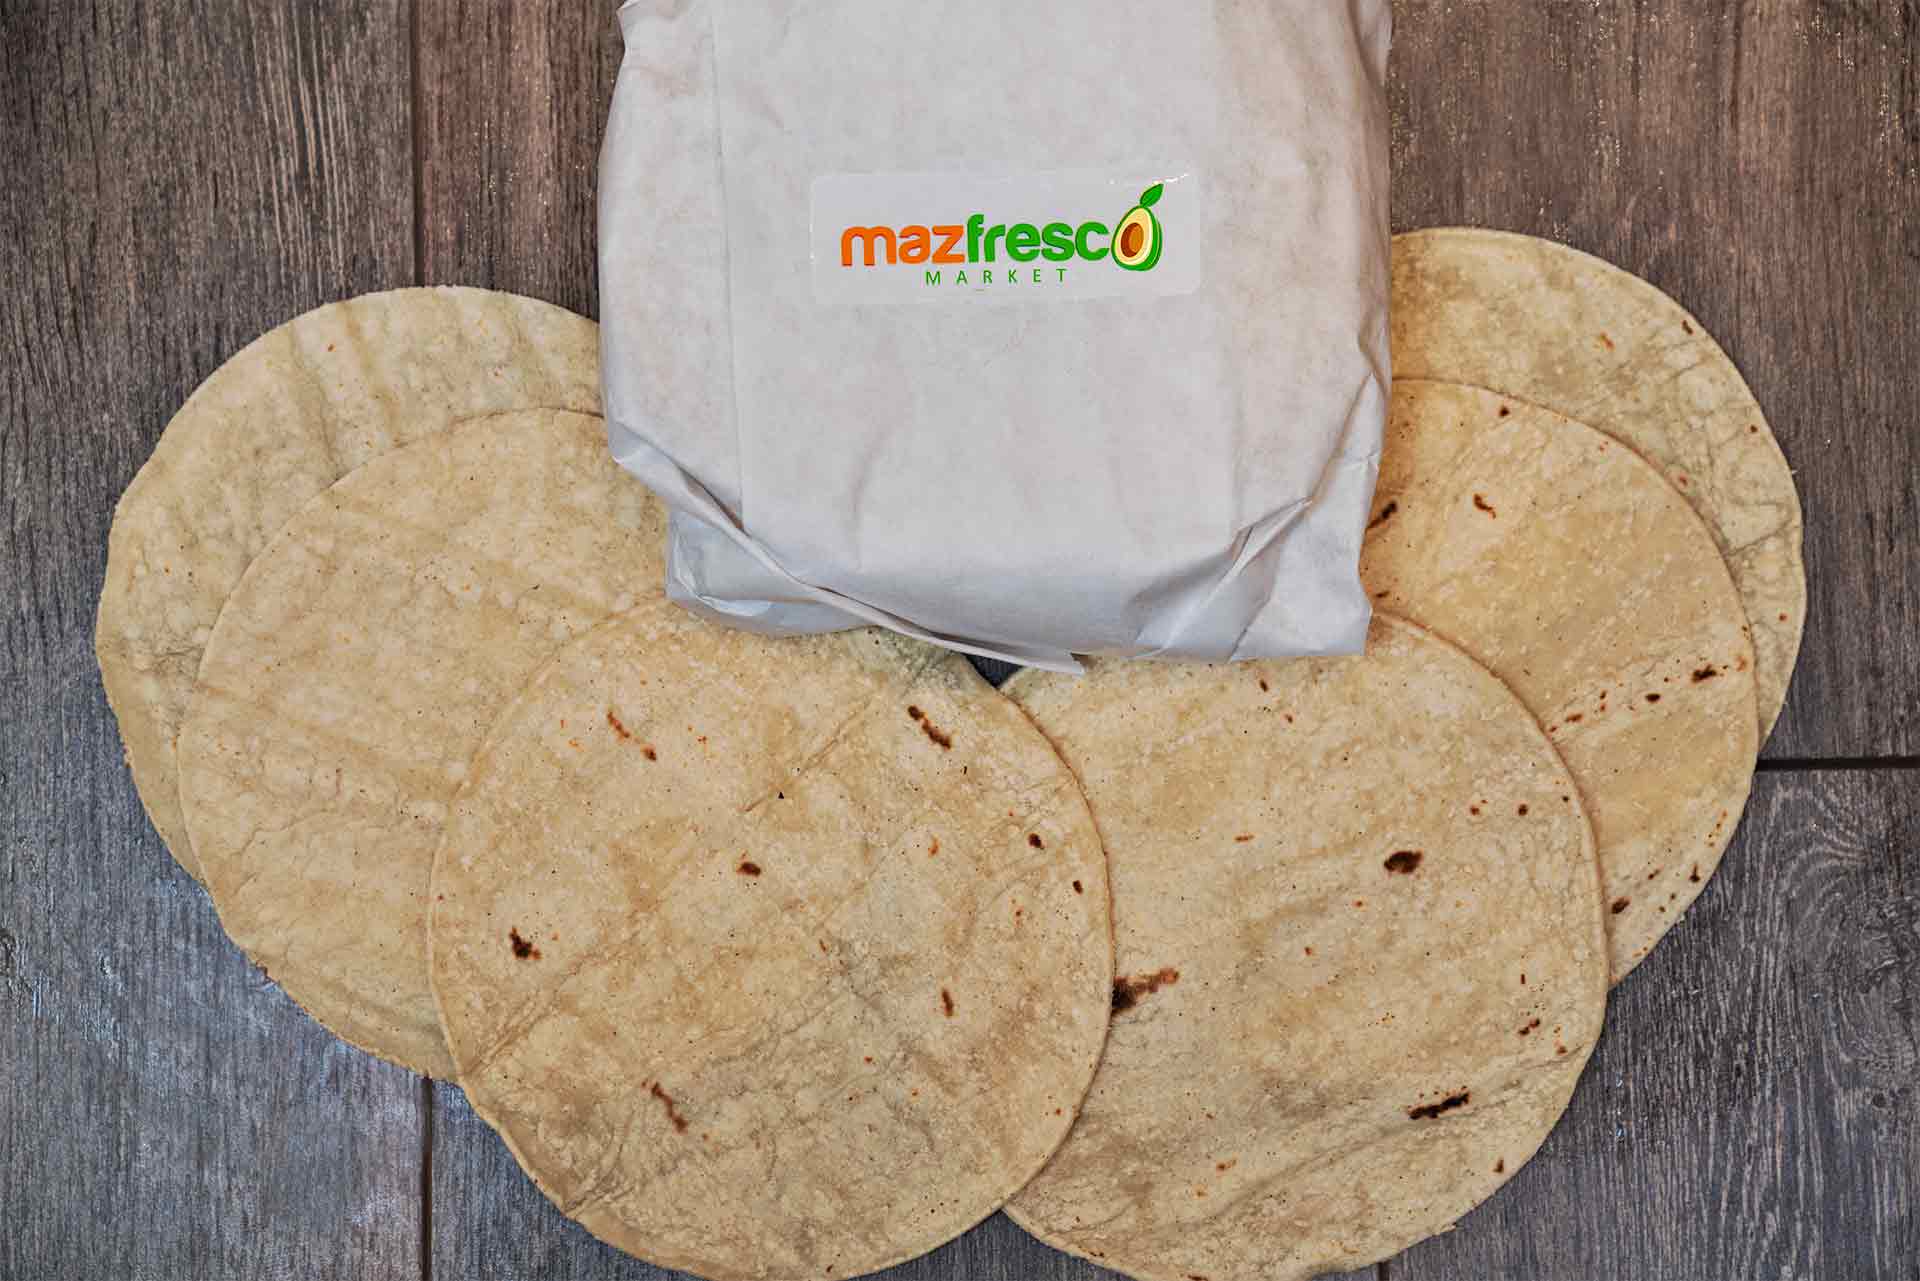 fresh tortillas everyday at mazfresco